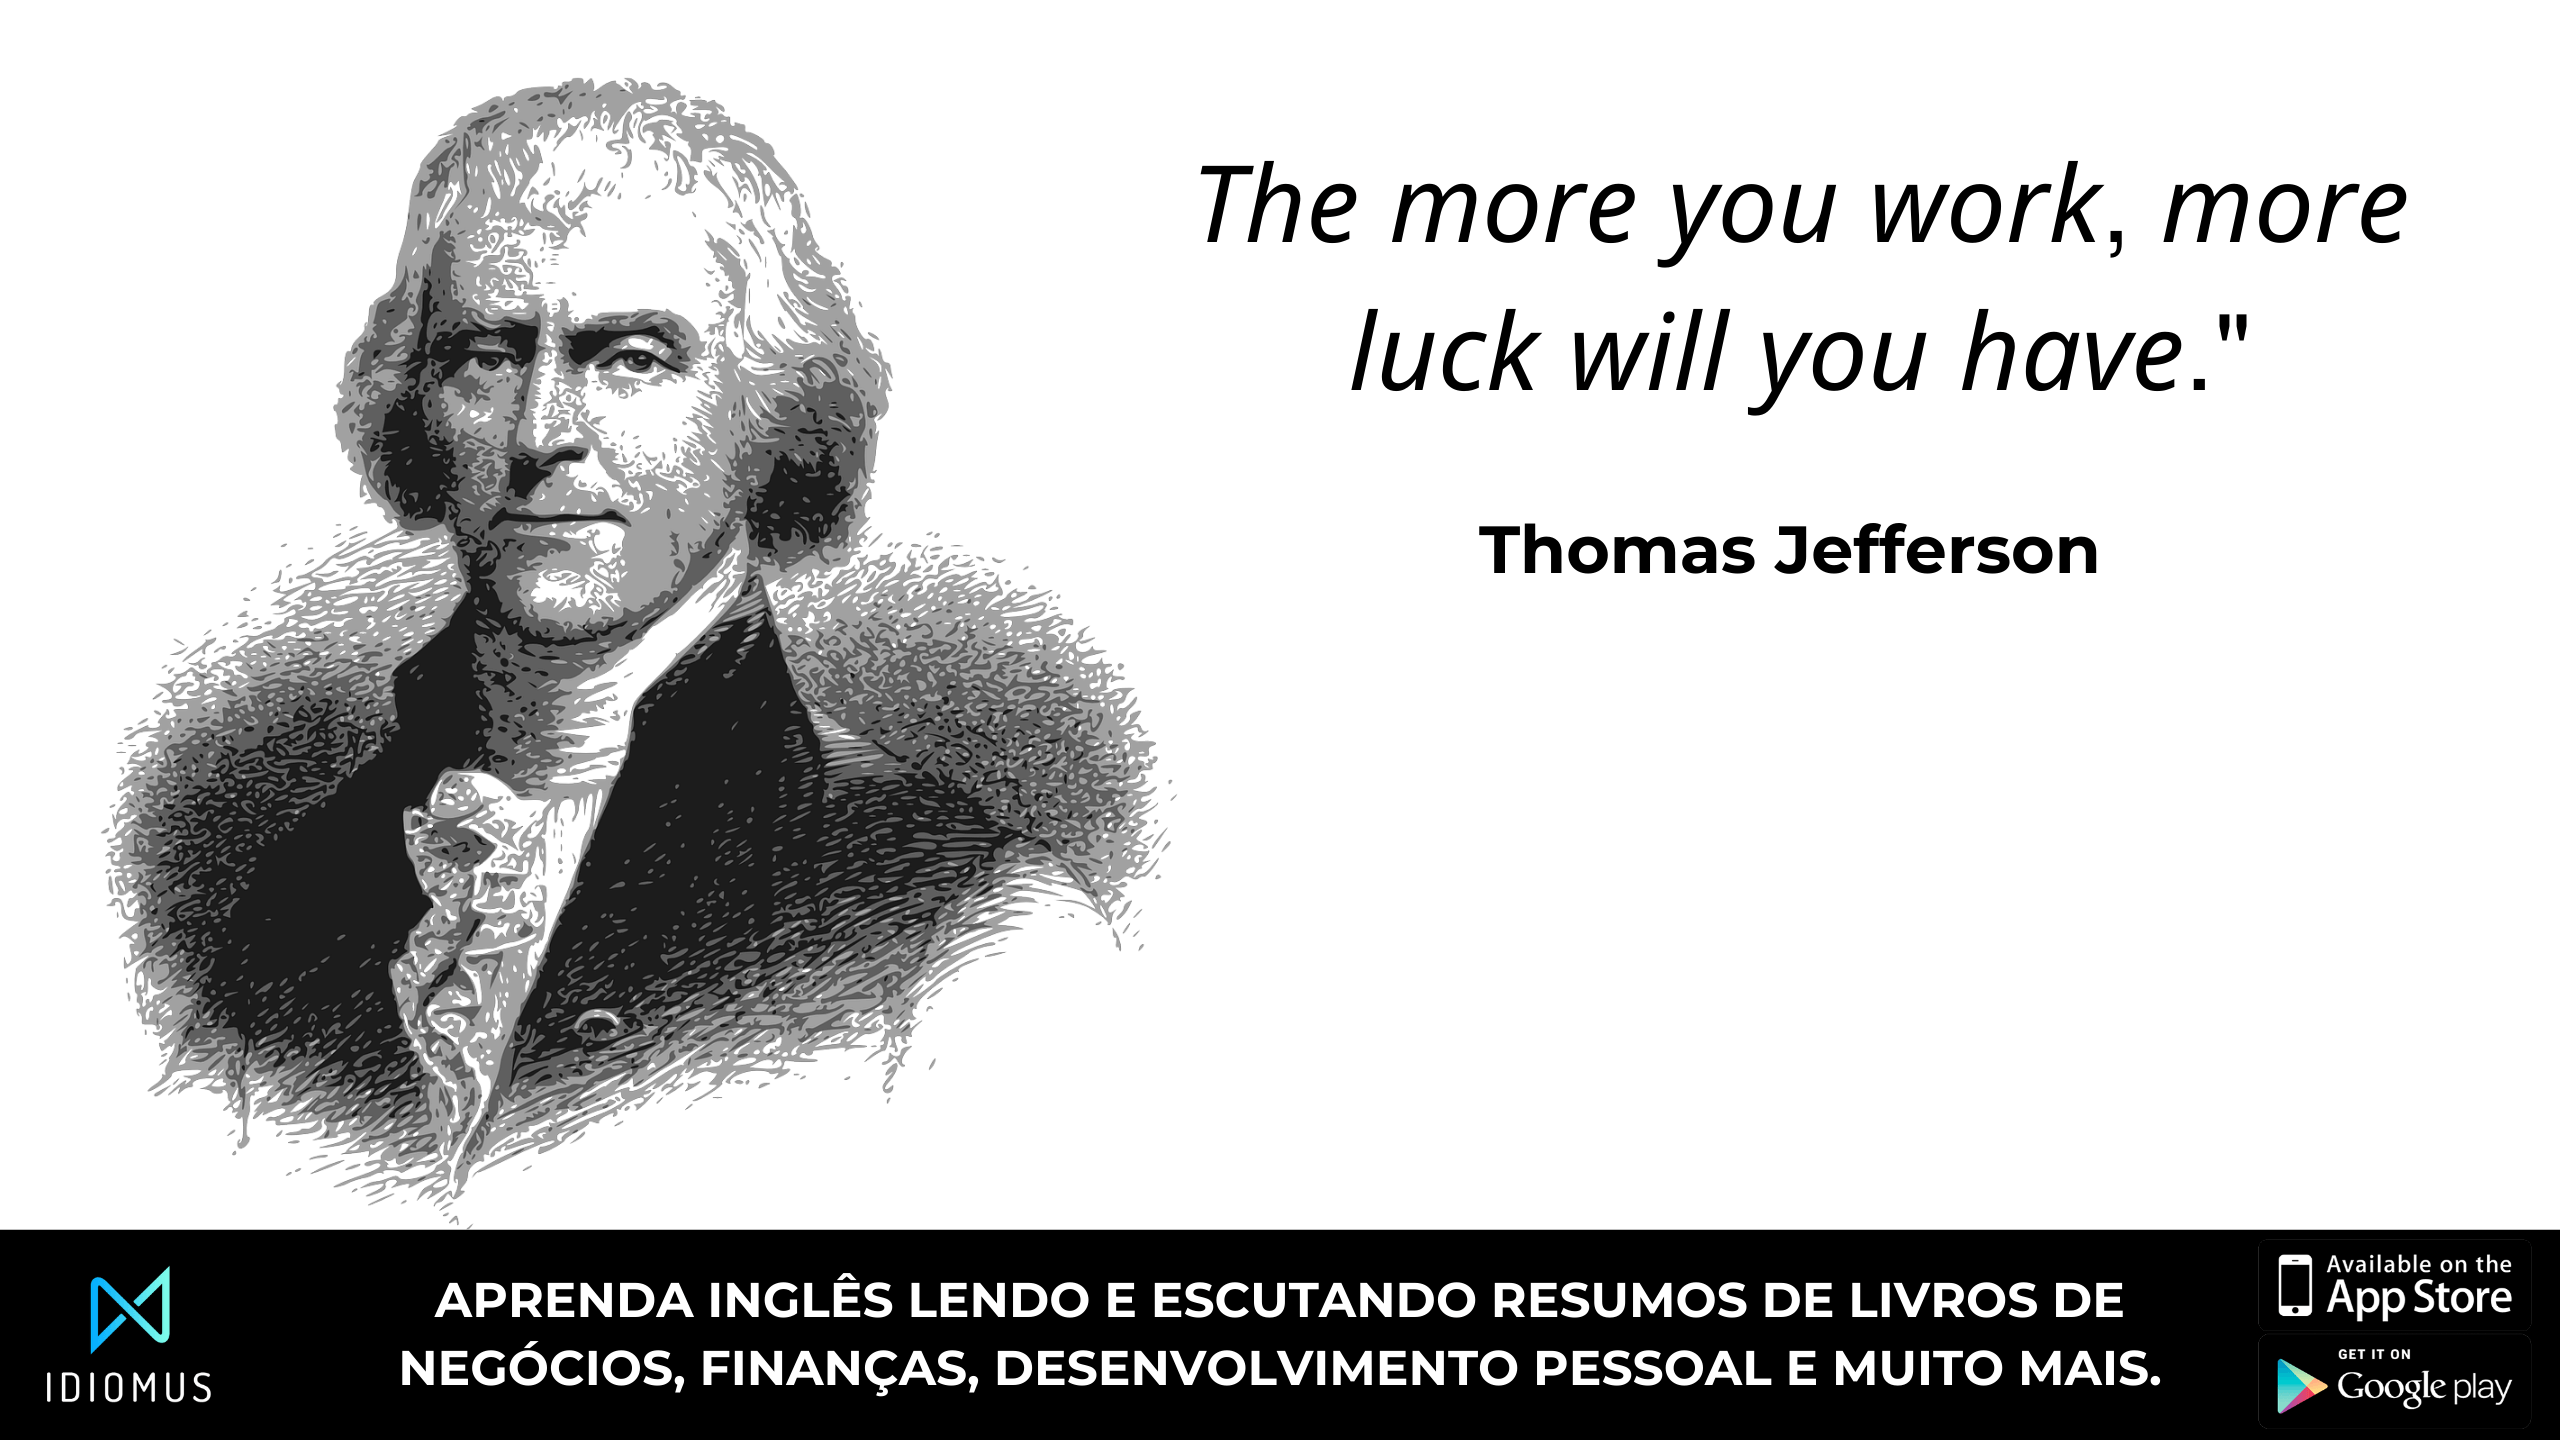 "Quanto mais você trabalhar, mais sorte terá." thomas jefferson